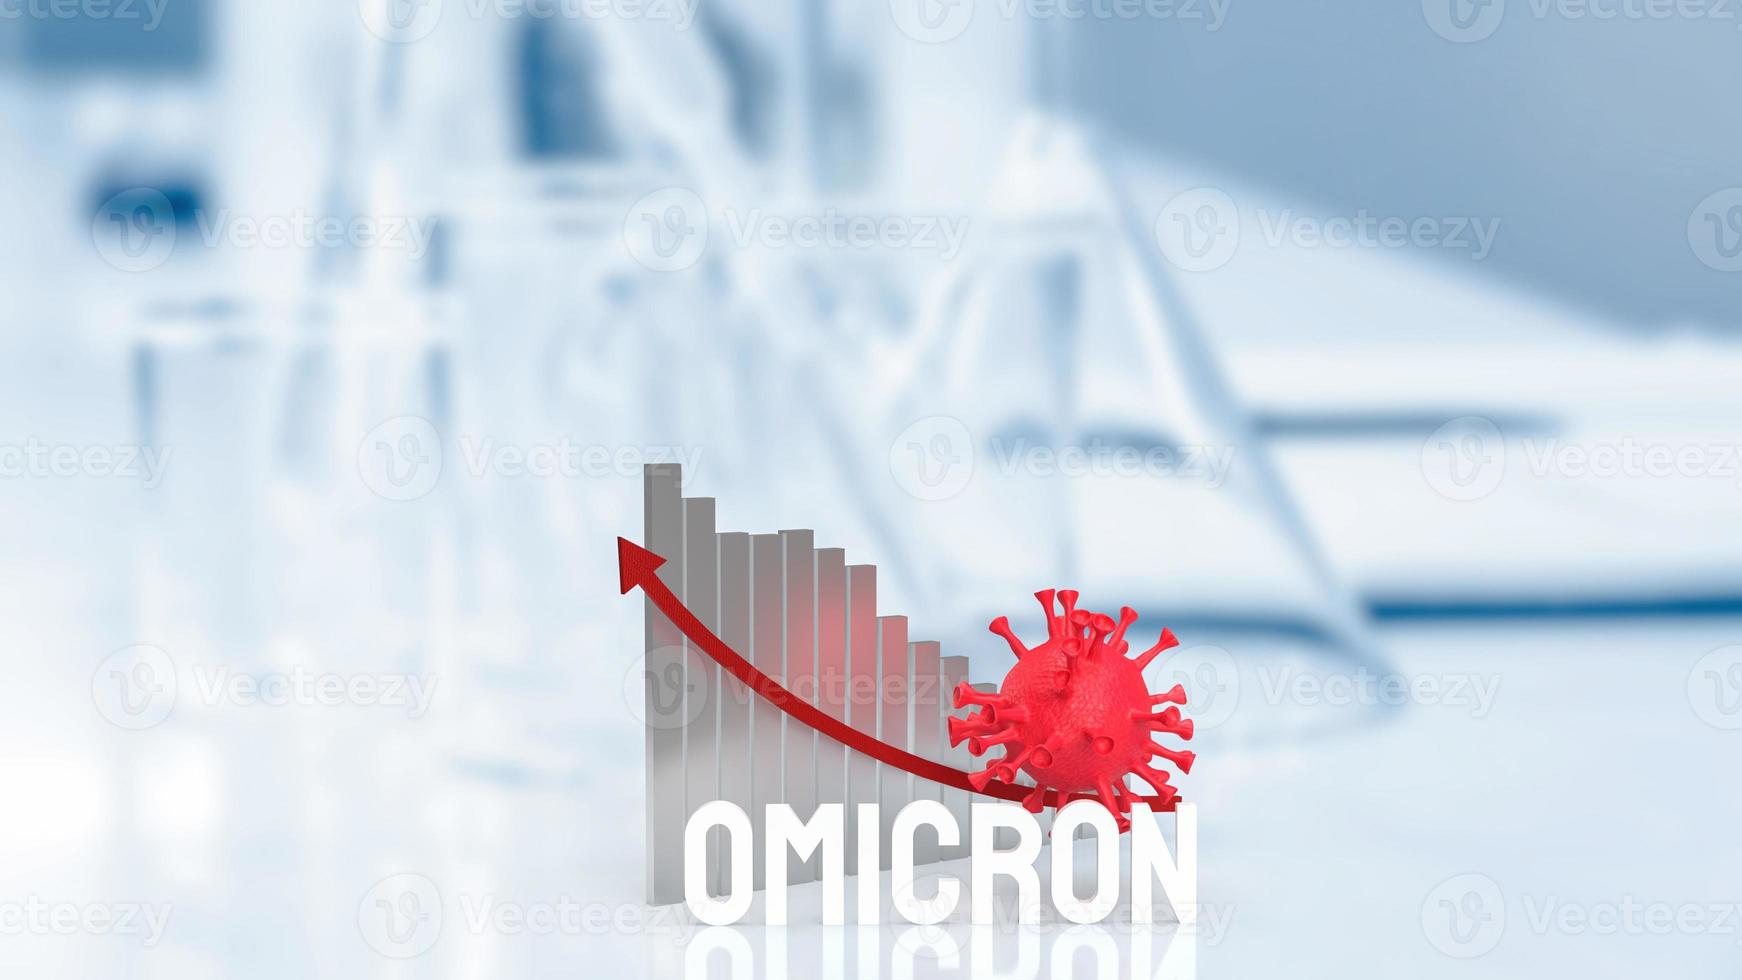 het virus ommicron en grafiek op lab achtergrond 3D-rendering foto